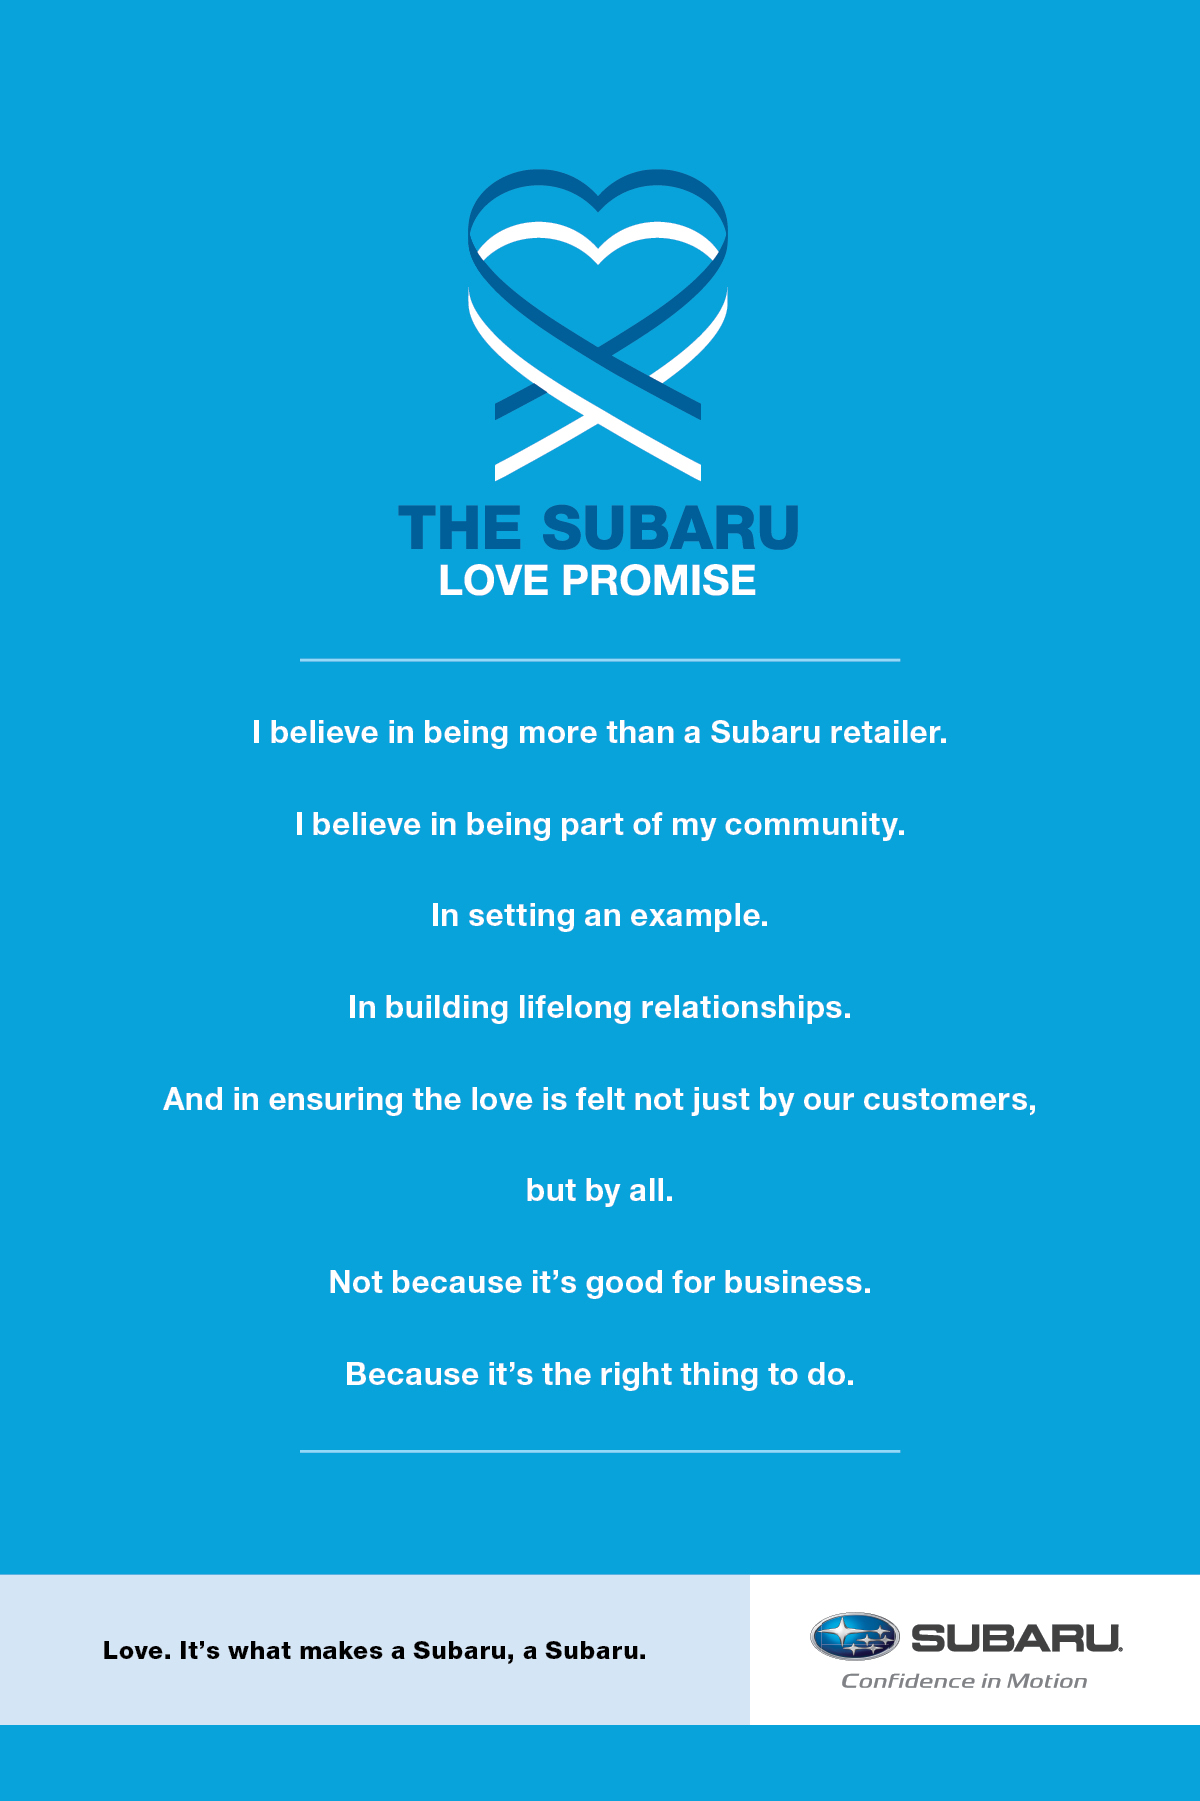 Subaru Love Promise promotion